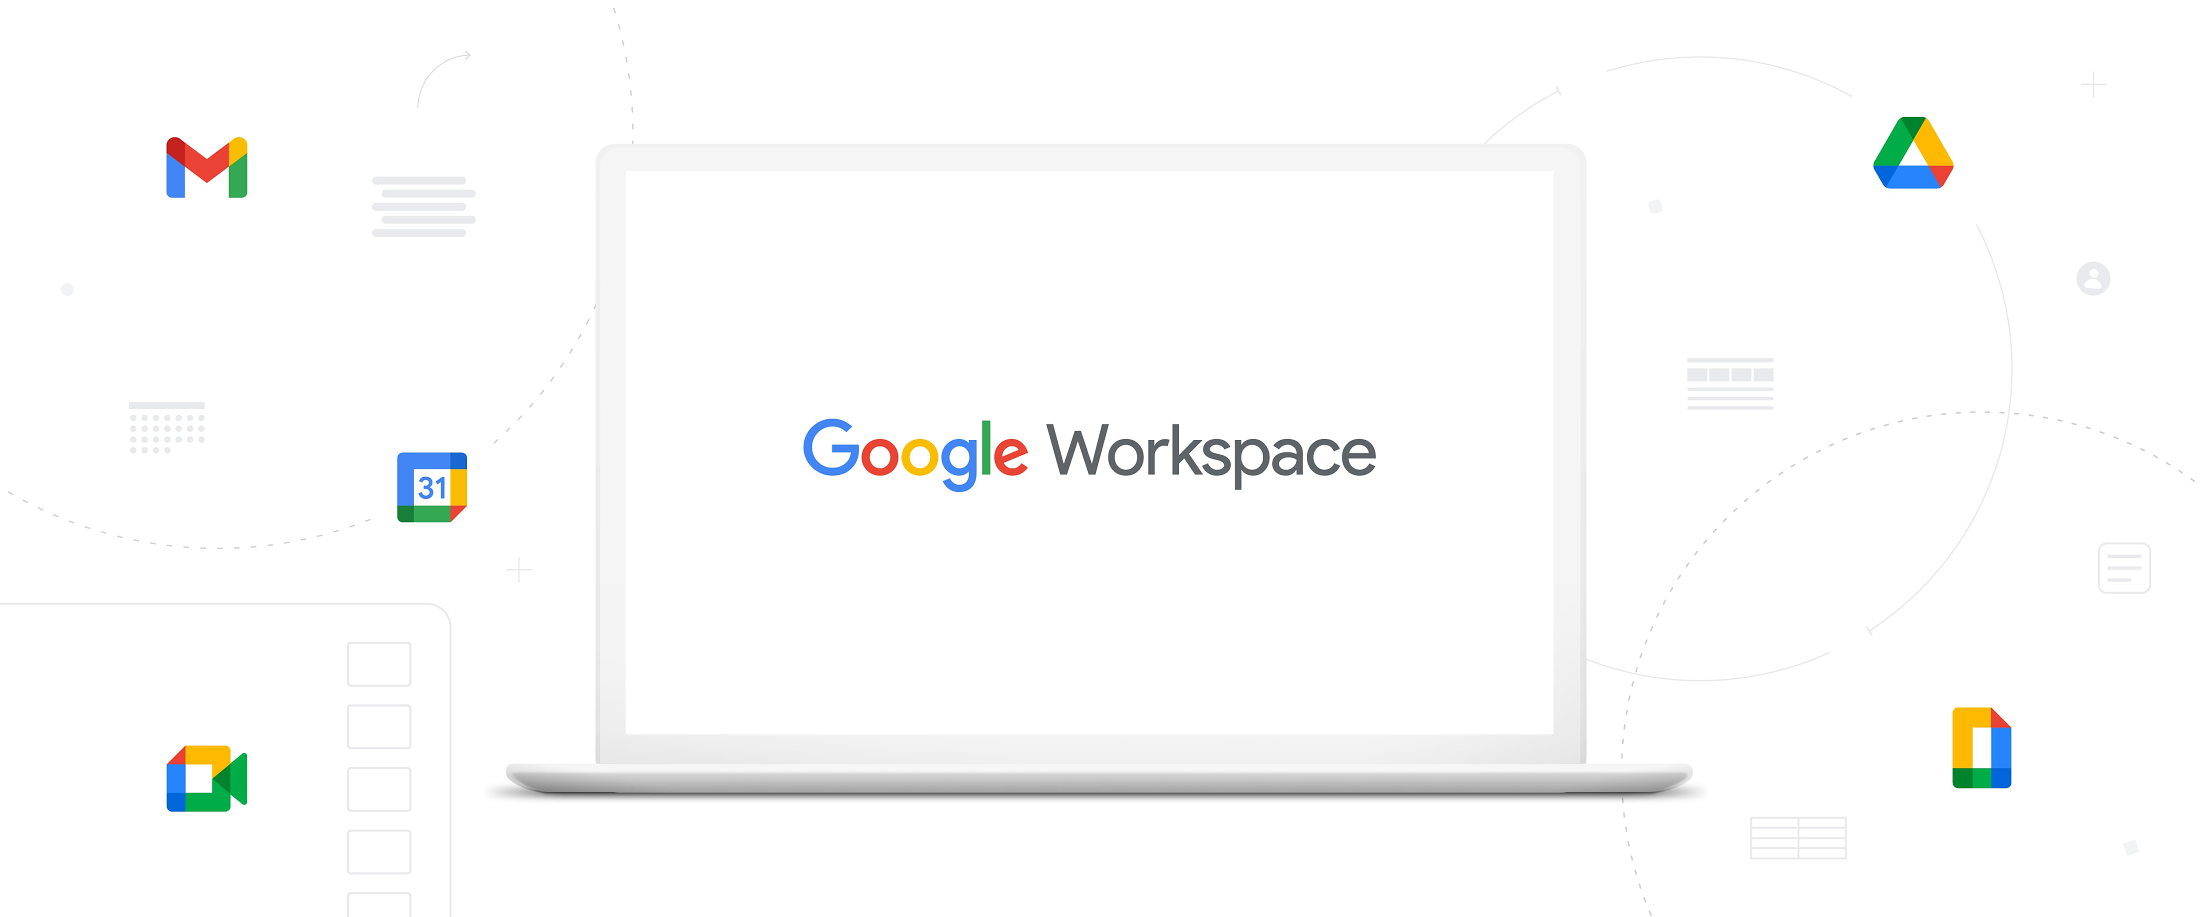 Google Workspace, novo nome do G Suite, integra Gmail, Docs e Meet